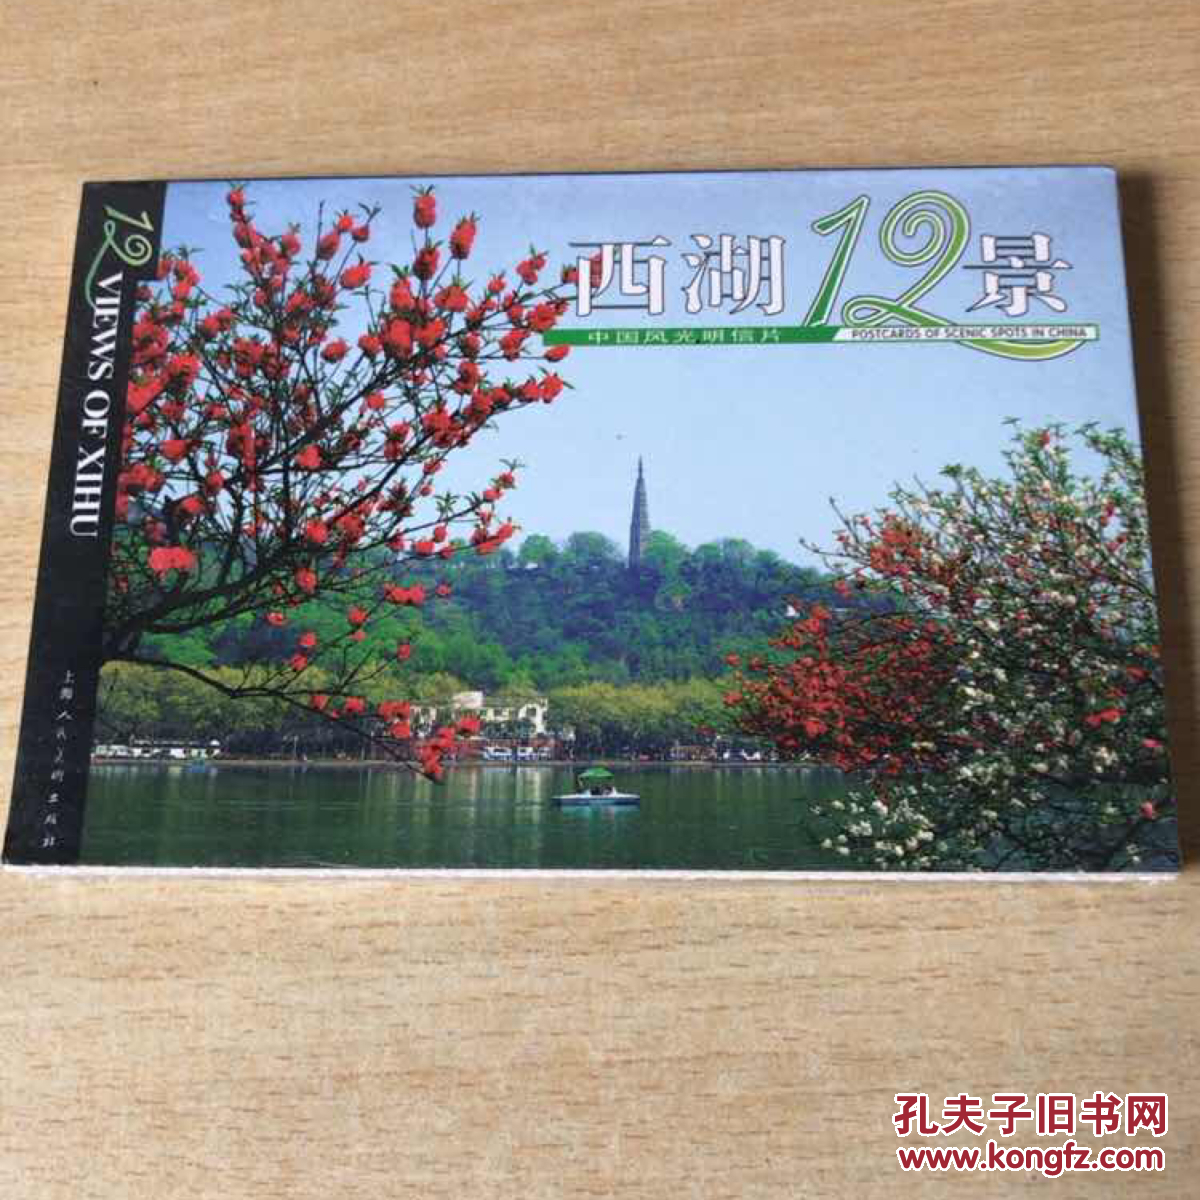 西湖12景 中国风光风景摄影明信片 塑封